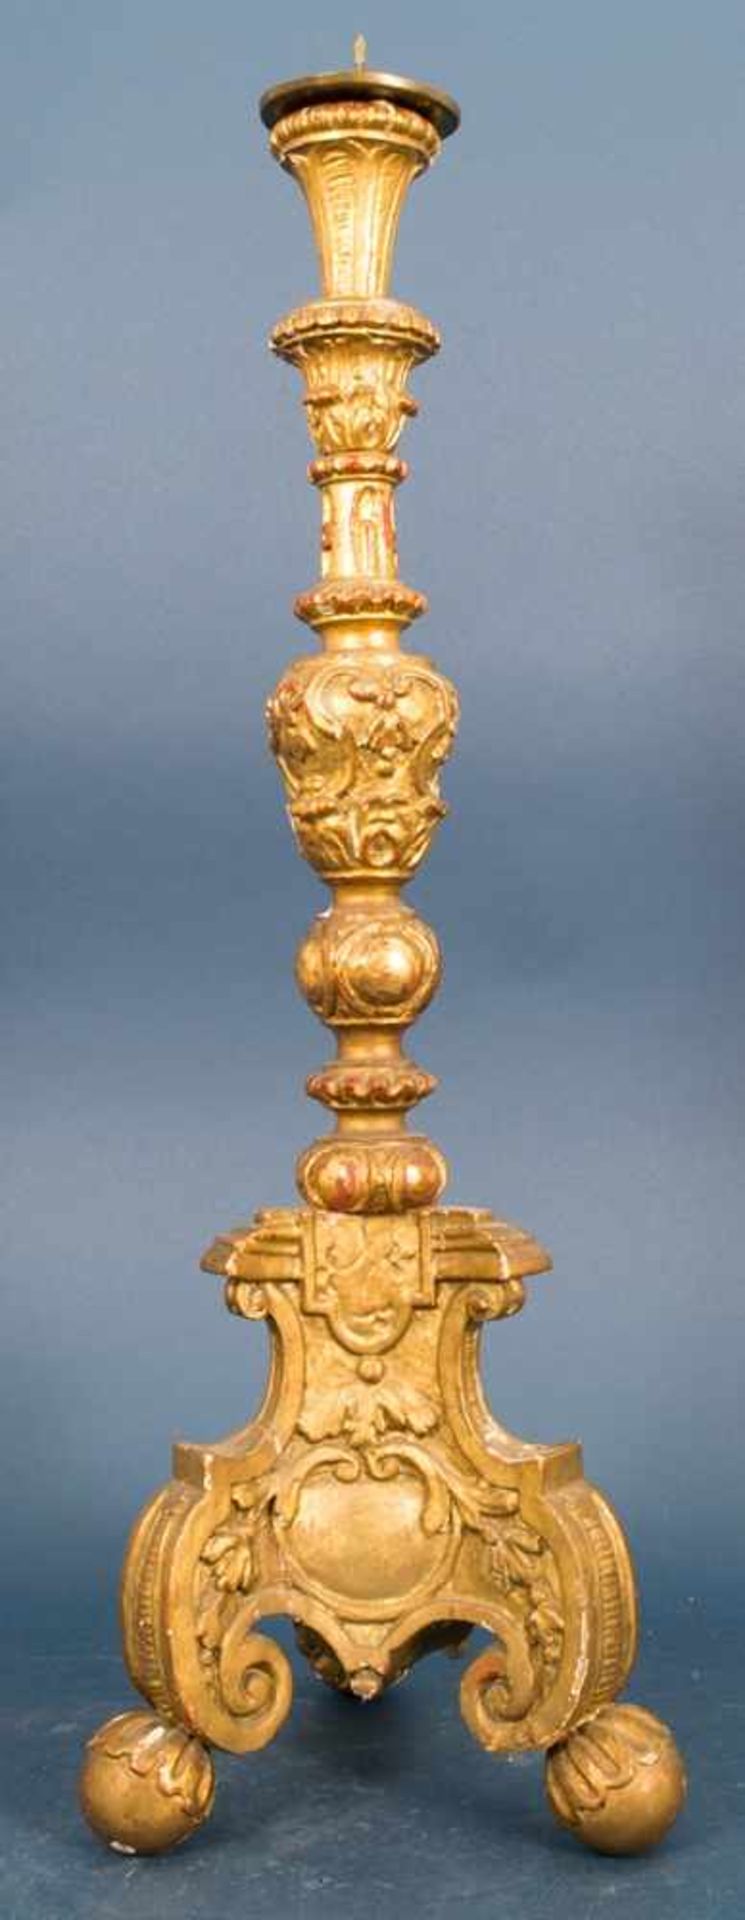 Einflammiger Kerzenleuchter, Barock, 18. Jhd., Holz geschnitzt & vergoldet, Höhe inkl. Tropfteller - Bild 2 aus 10